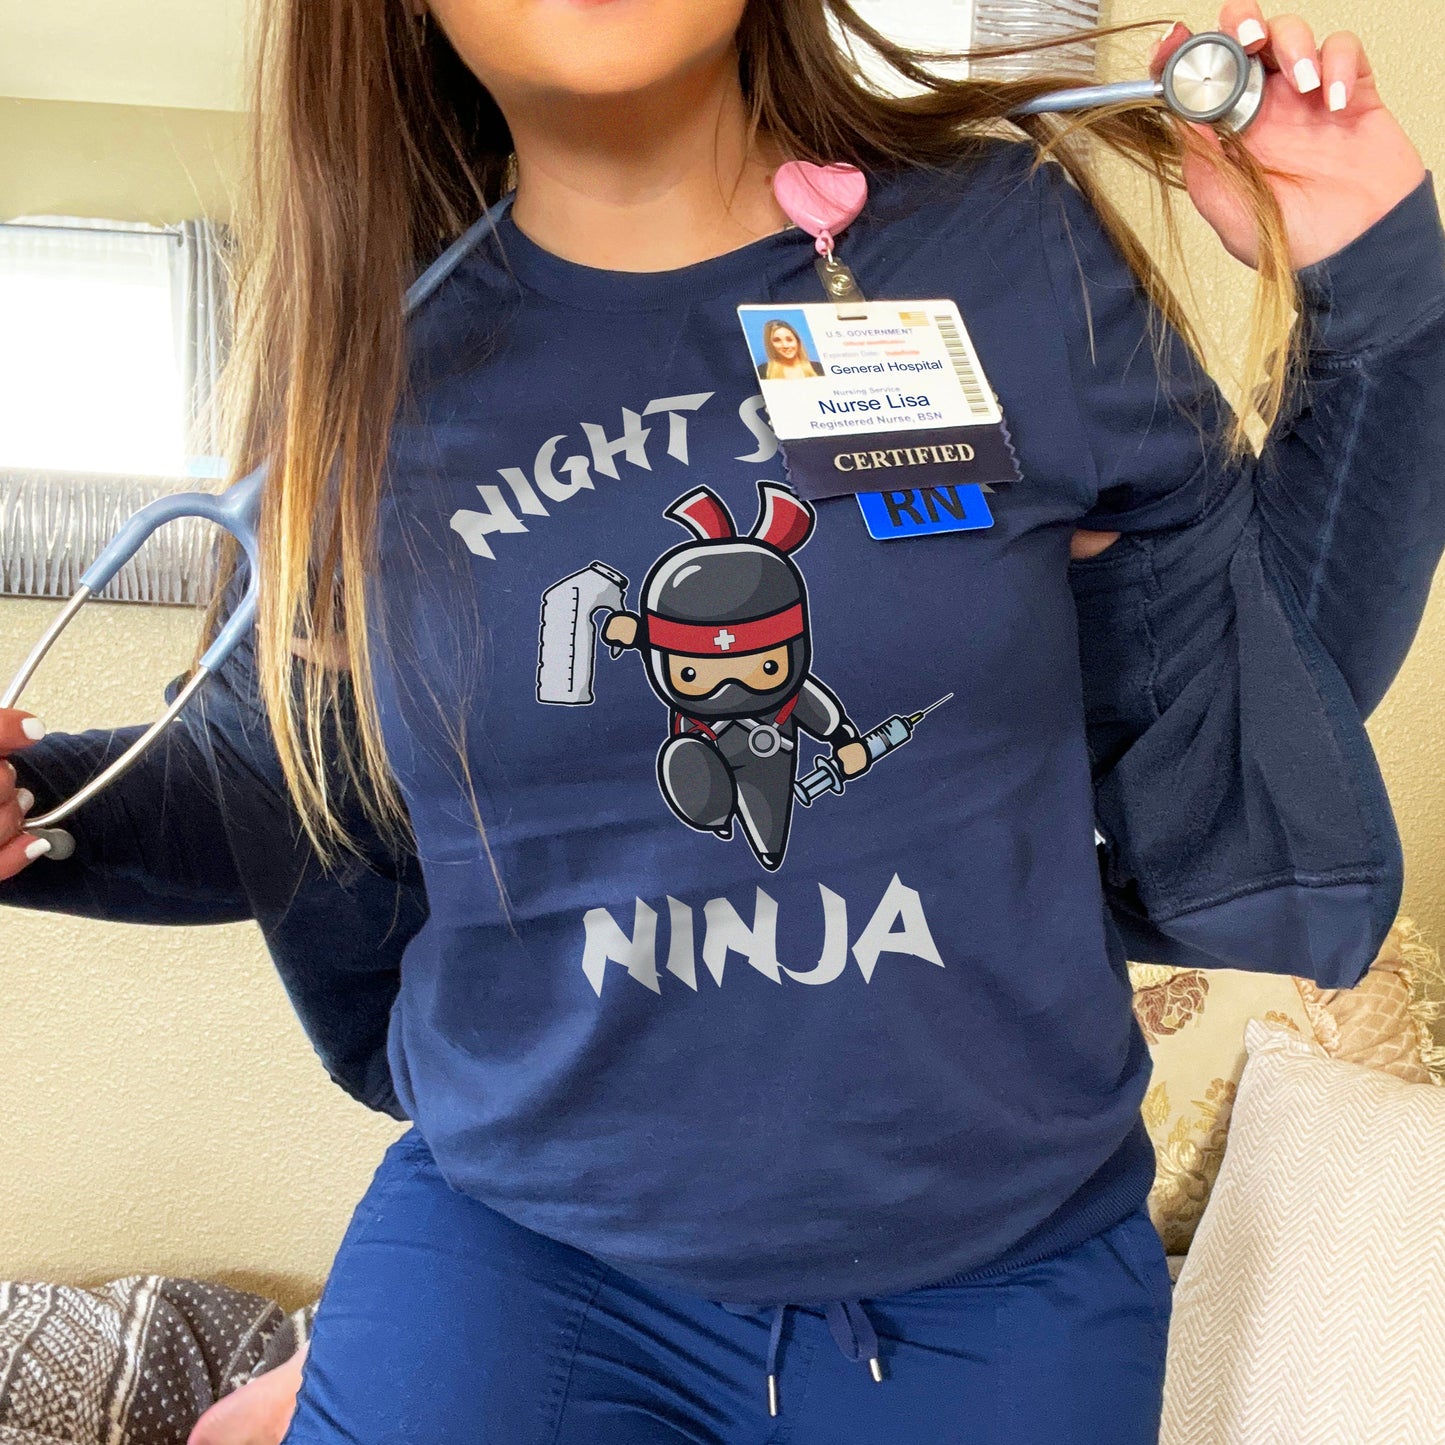 Night Shift Ninja T-Shirt